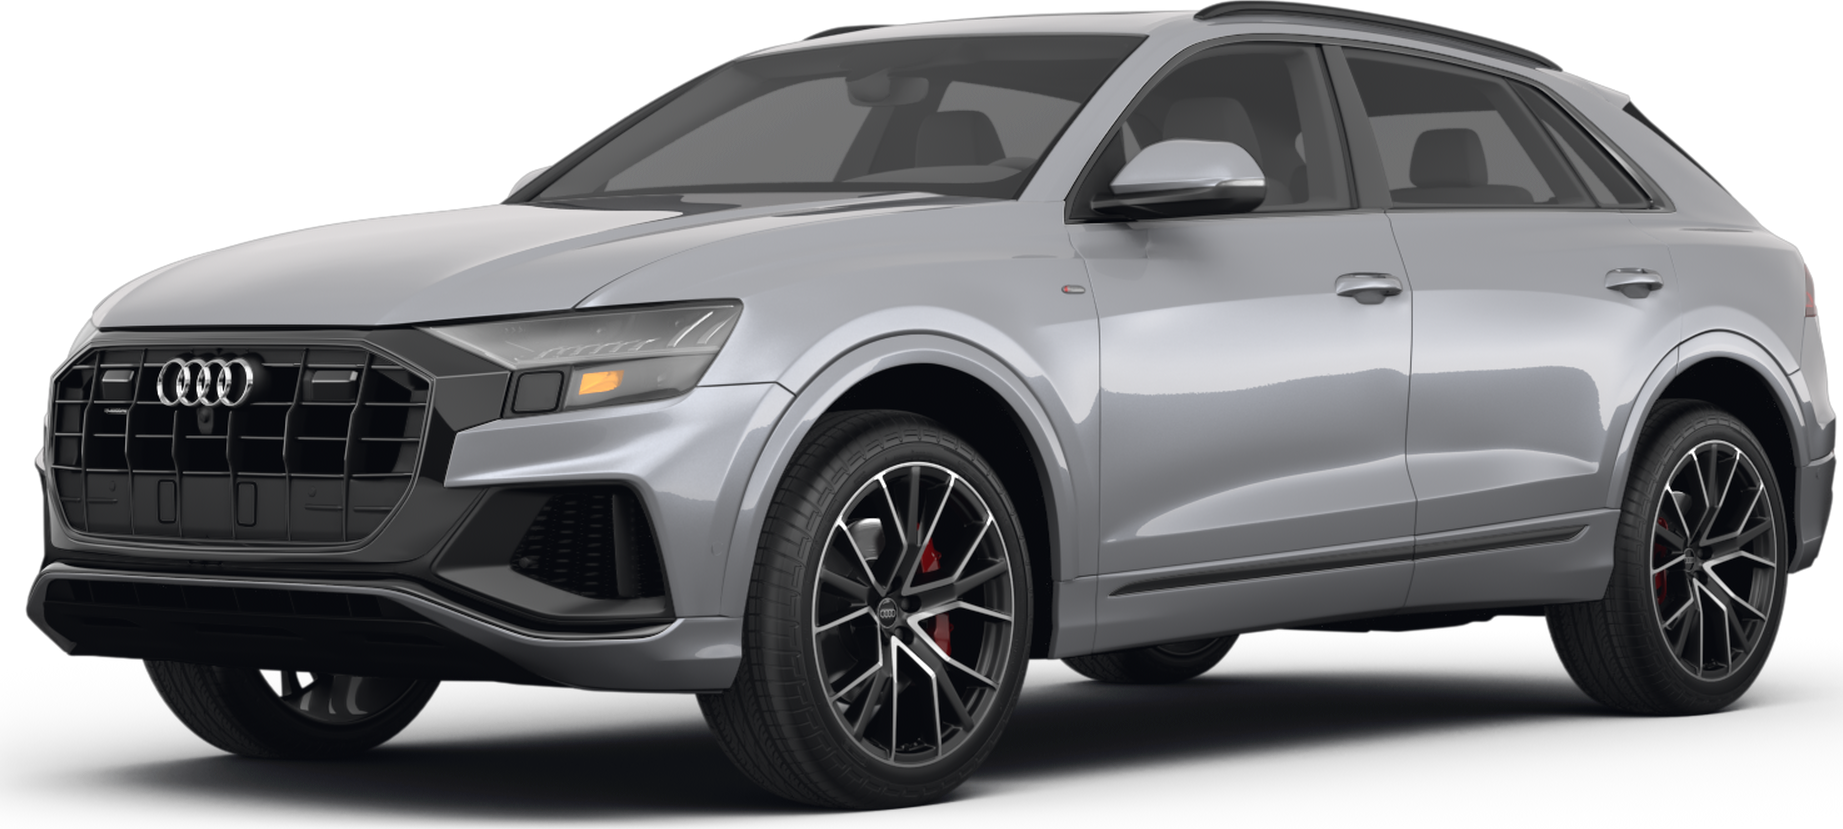 2022 Audi Q8 Price, Value, Ratings & Reviews